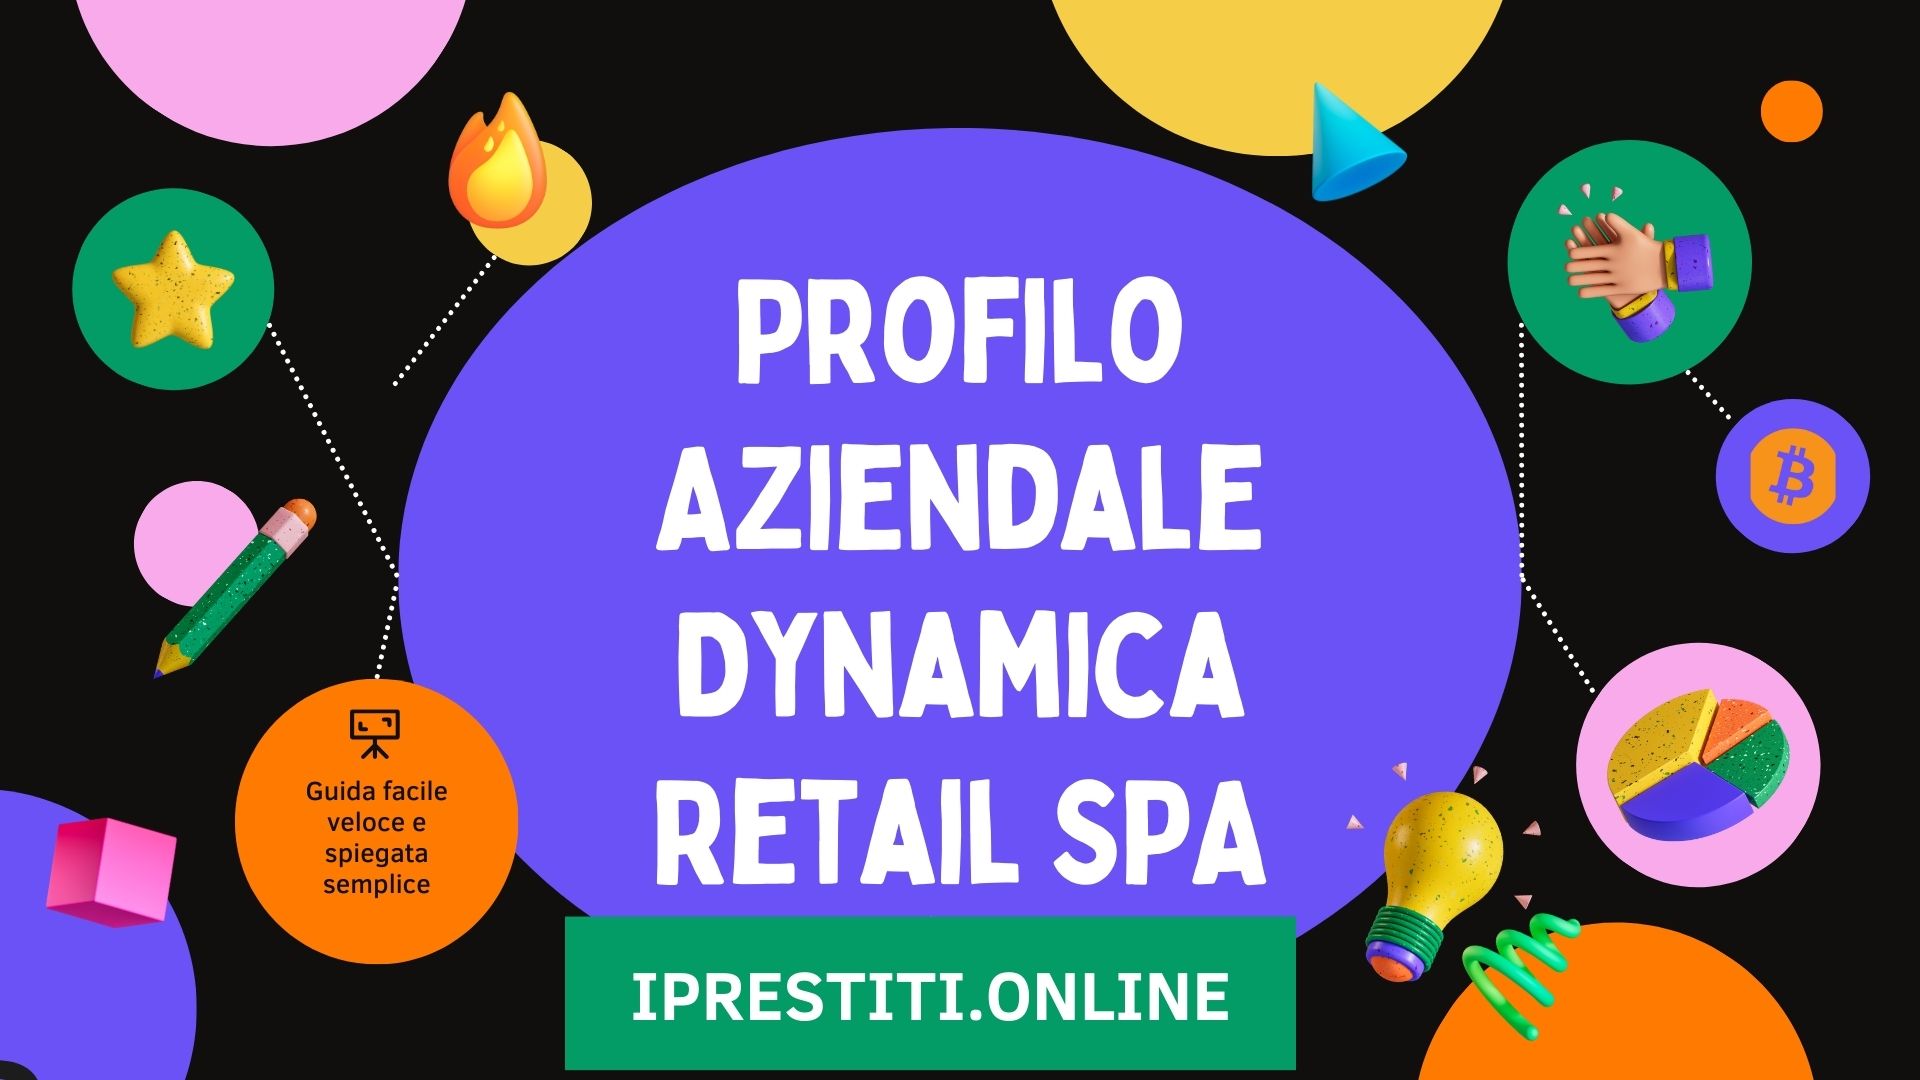 Profilo Aziendale Dynamica Retail SPA